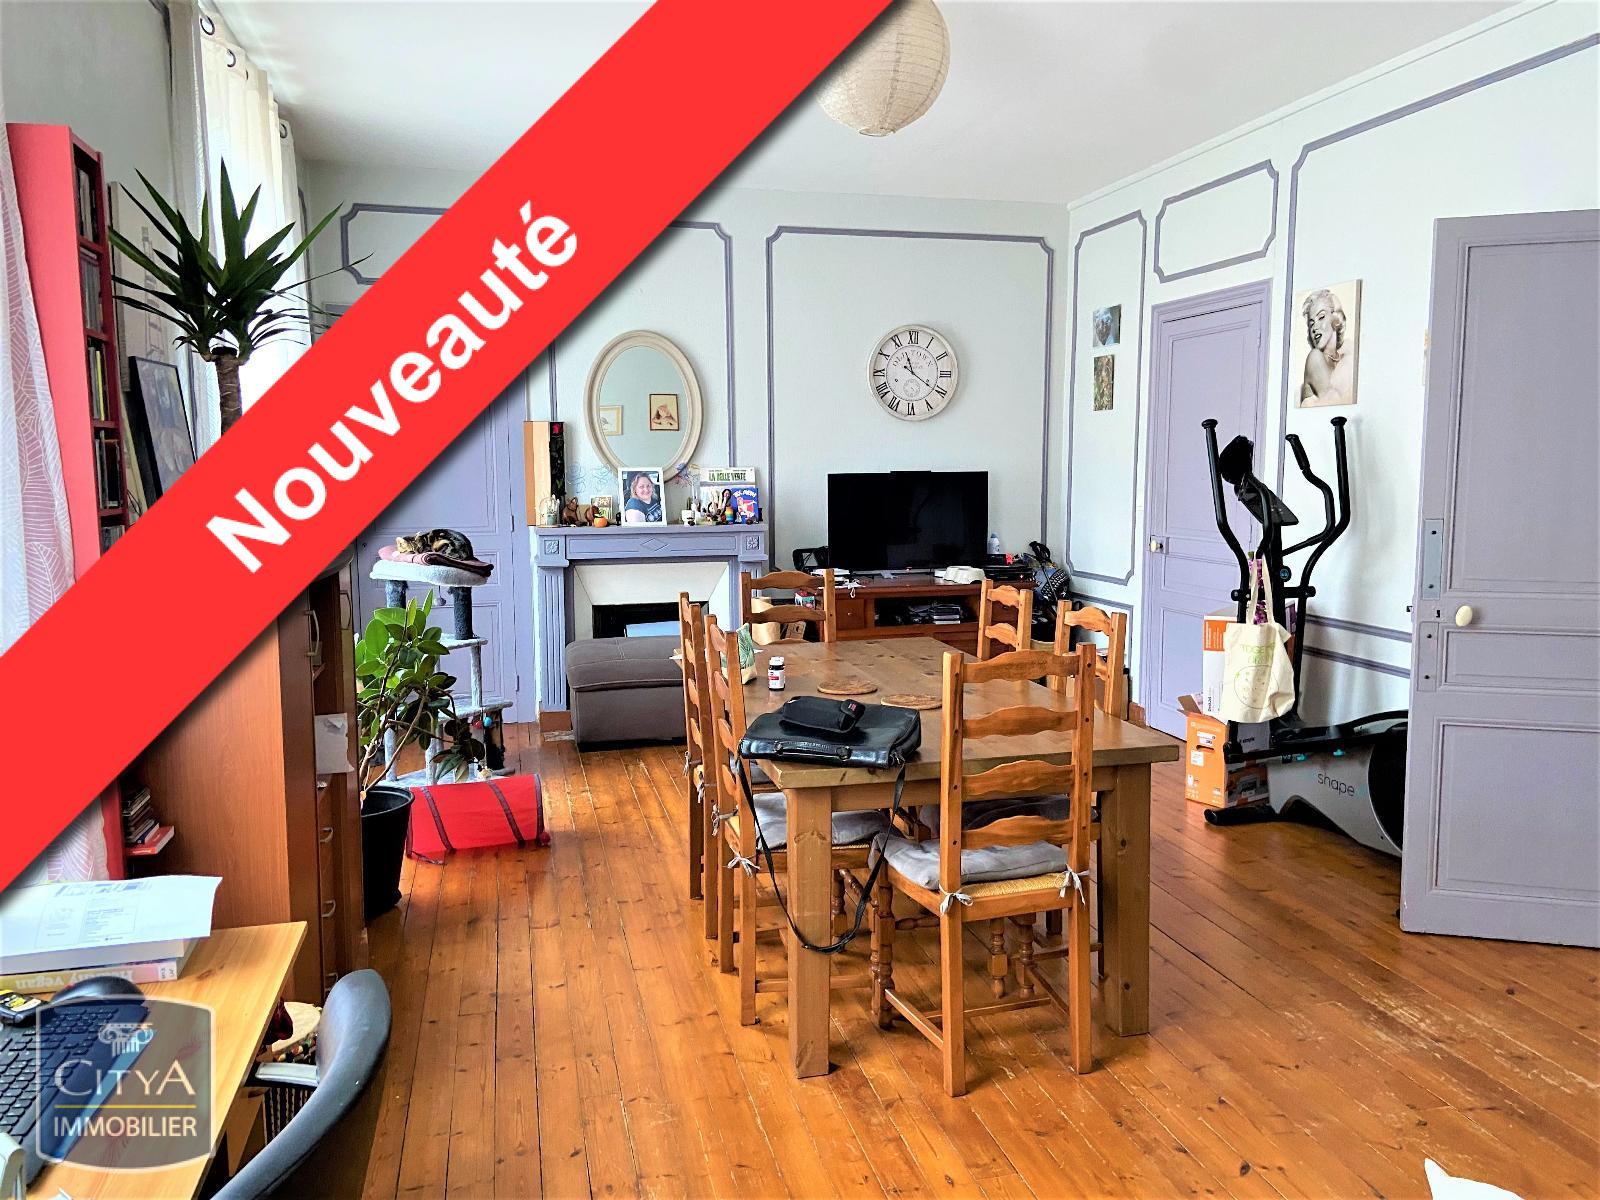 Vente Appartement 108m² 4 Pièces à Saint-Brieuc (22000) - Citya